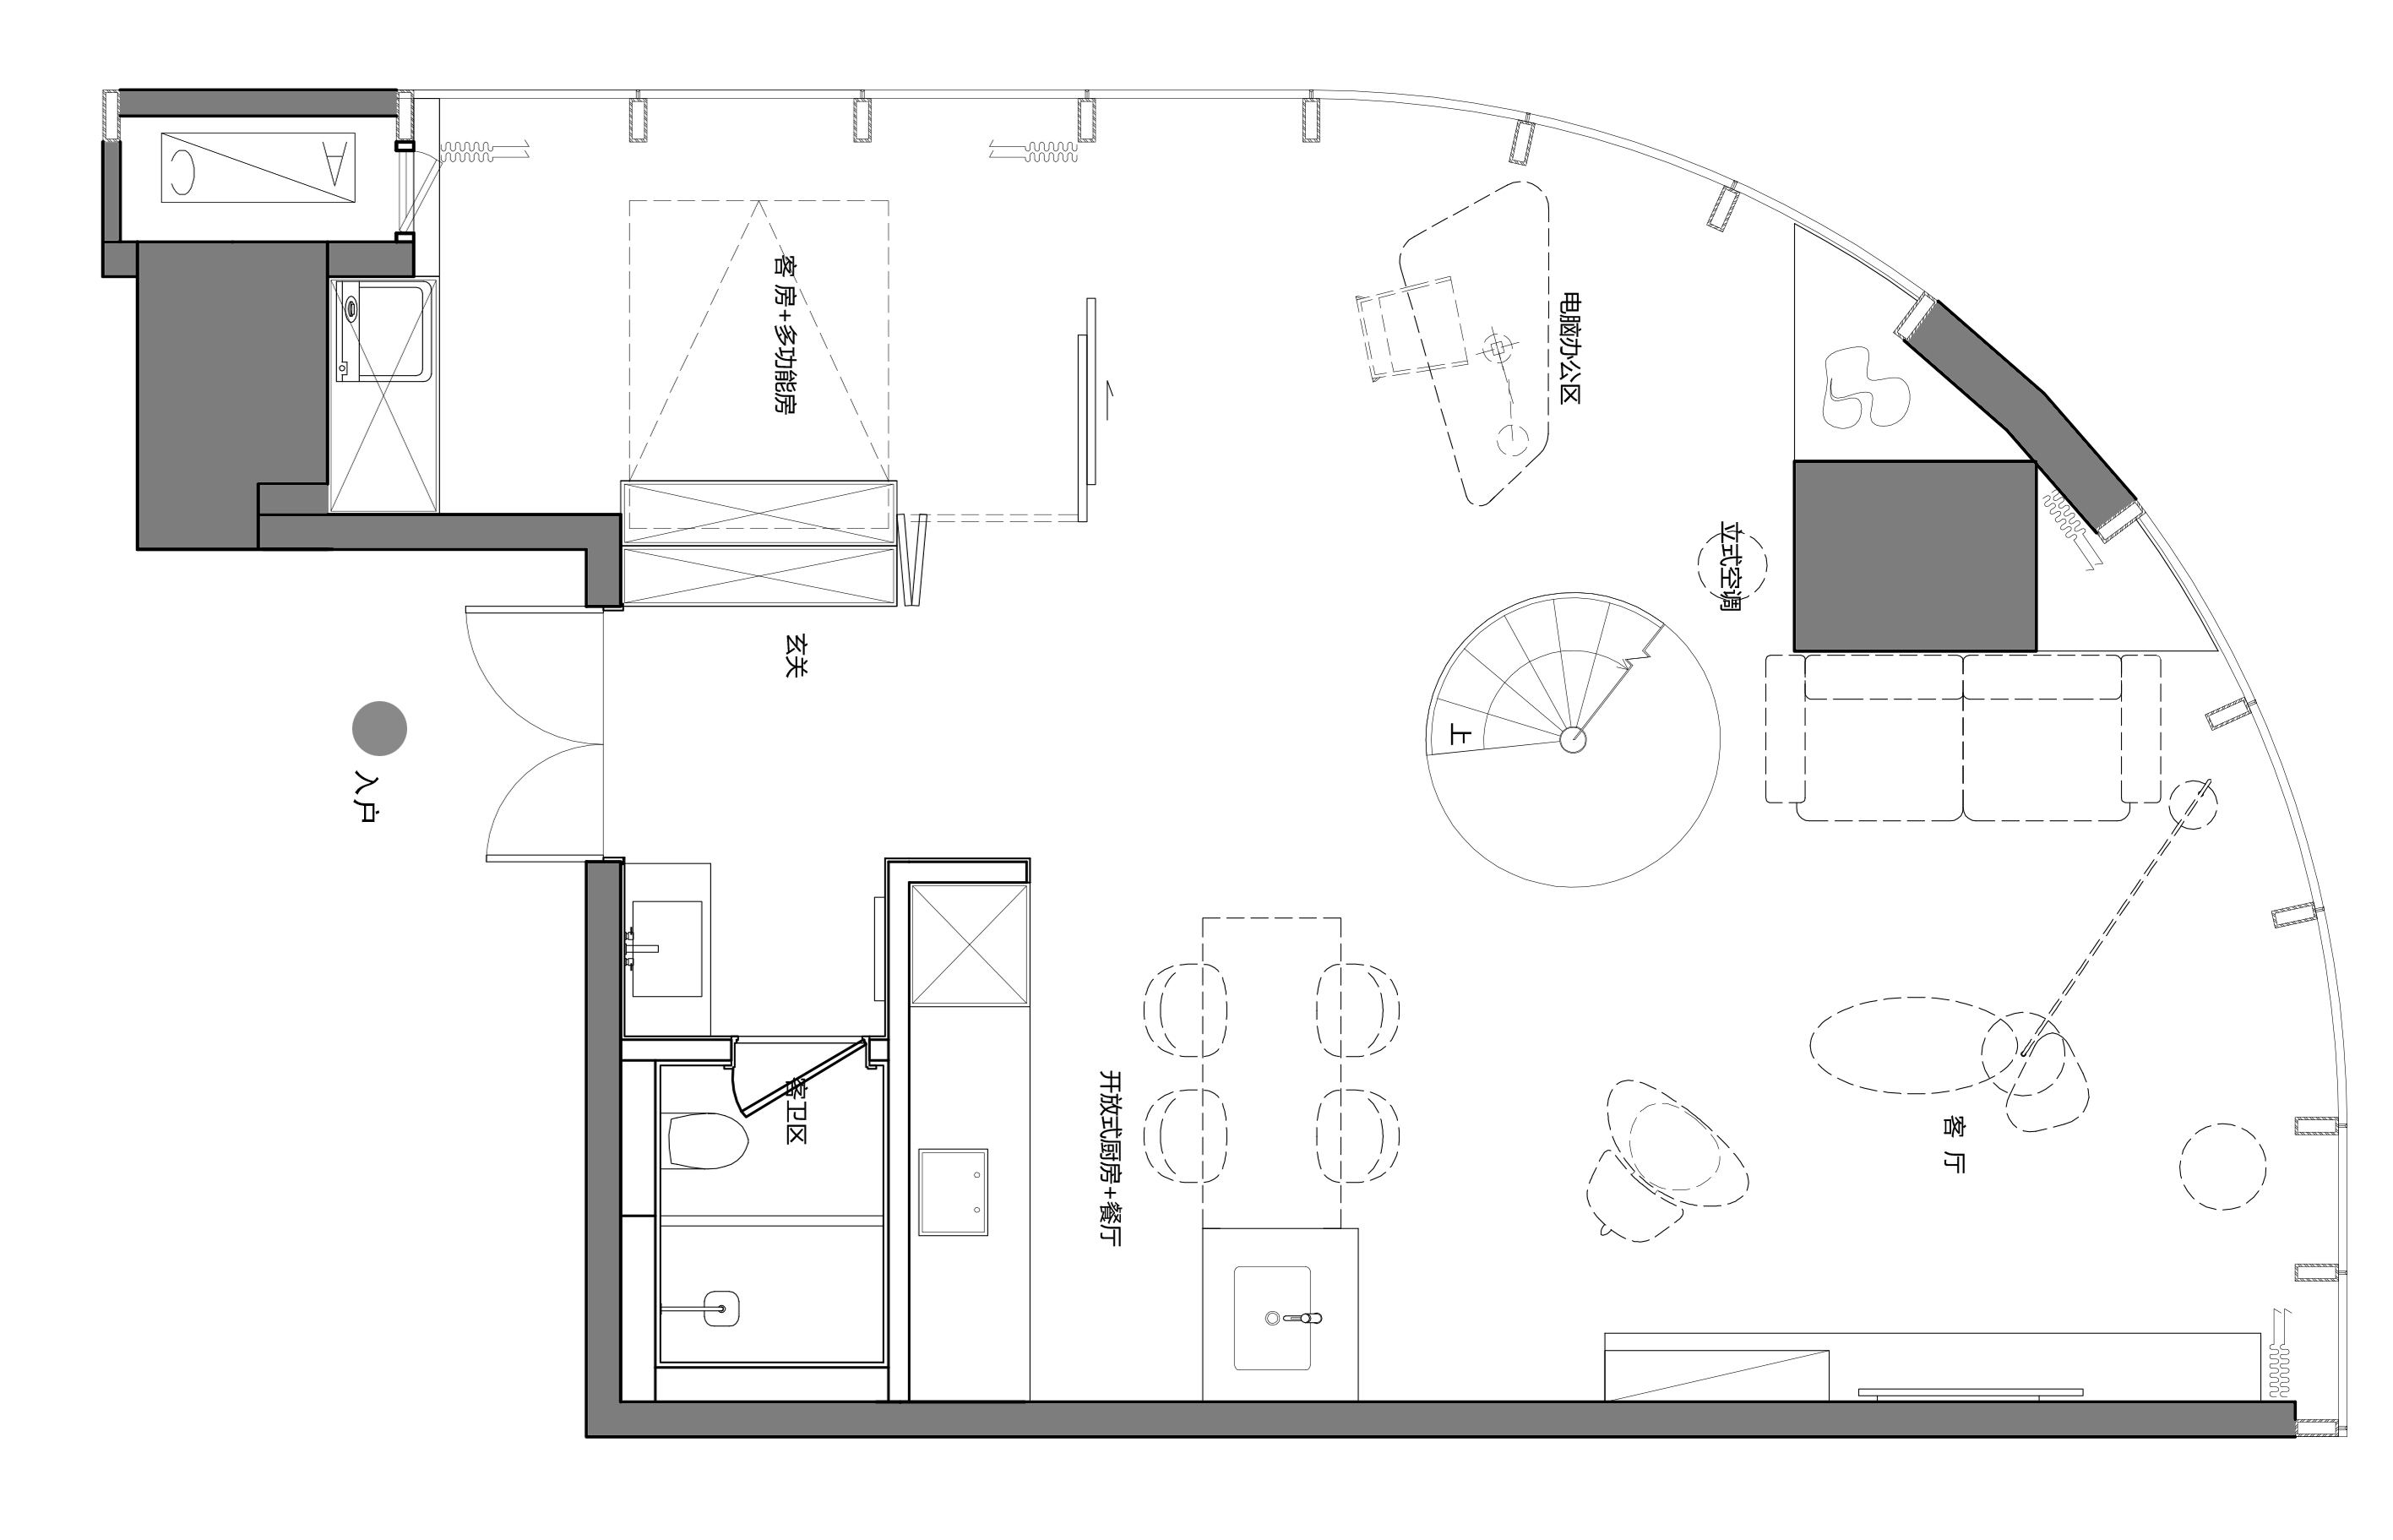 LOFT公寓设计,工业风公寓设计,家装设计,单身公寓设计,软装设计,成都公寓设计,成都天廊T66高端公寓,项目投稿,初一设计,成都初一设计